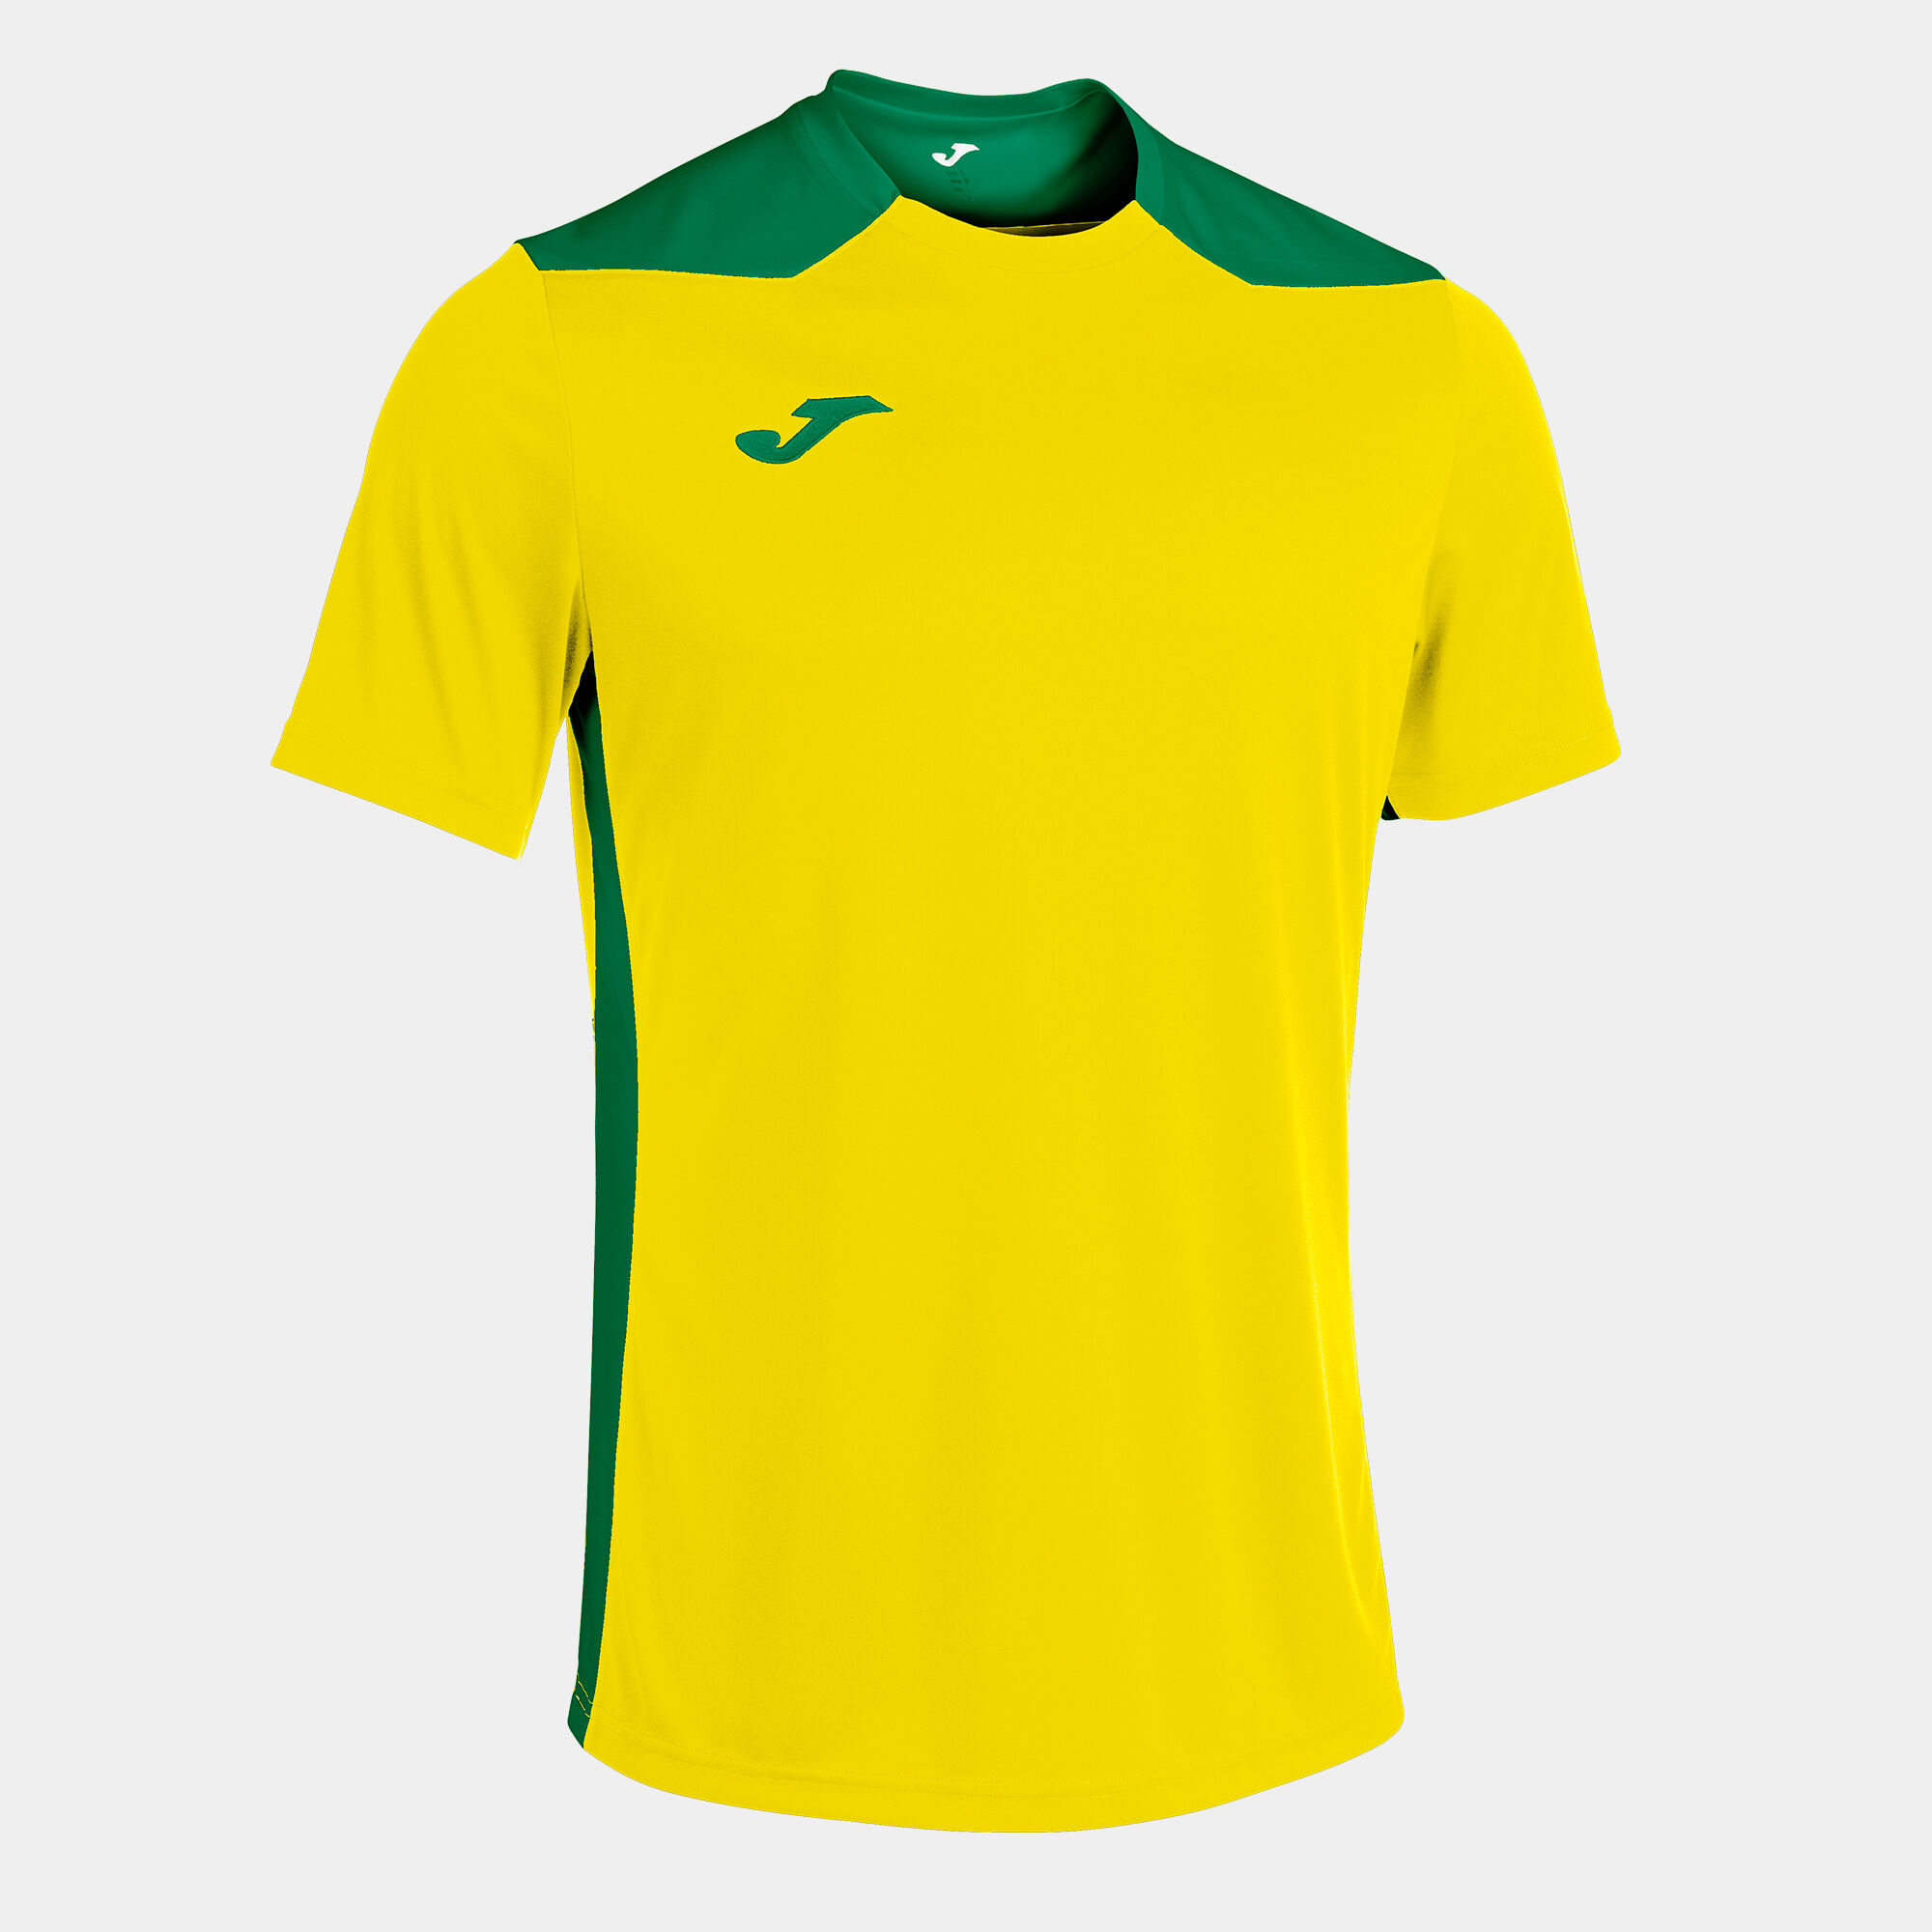 Camisetas amarillas con las mangas verdes ⚡️ Ver oferta